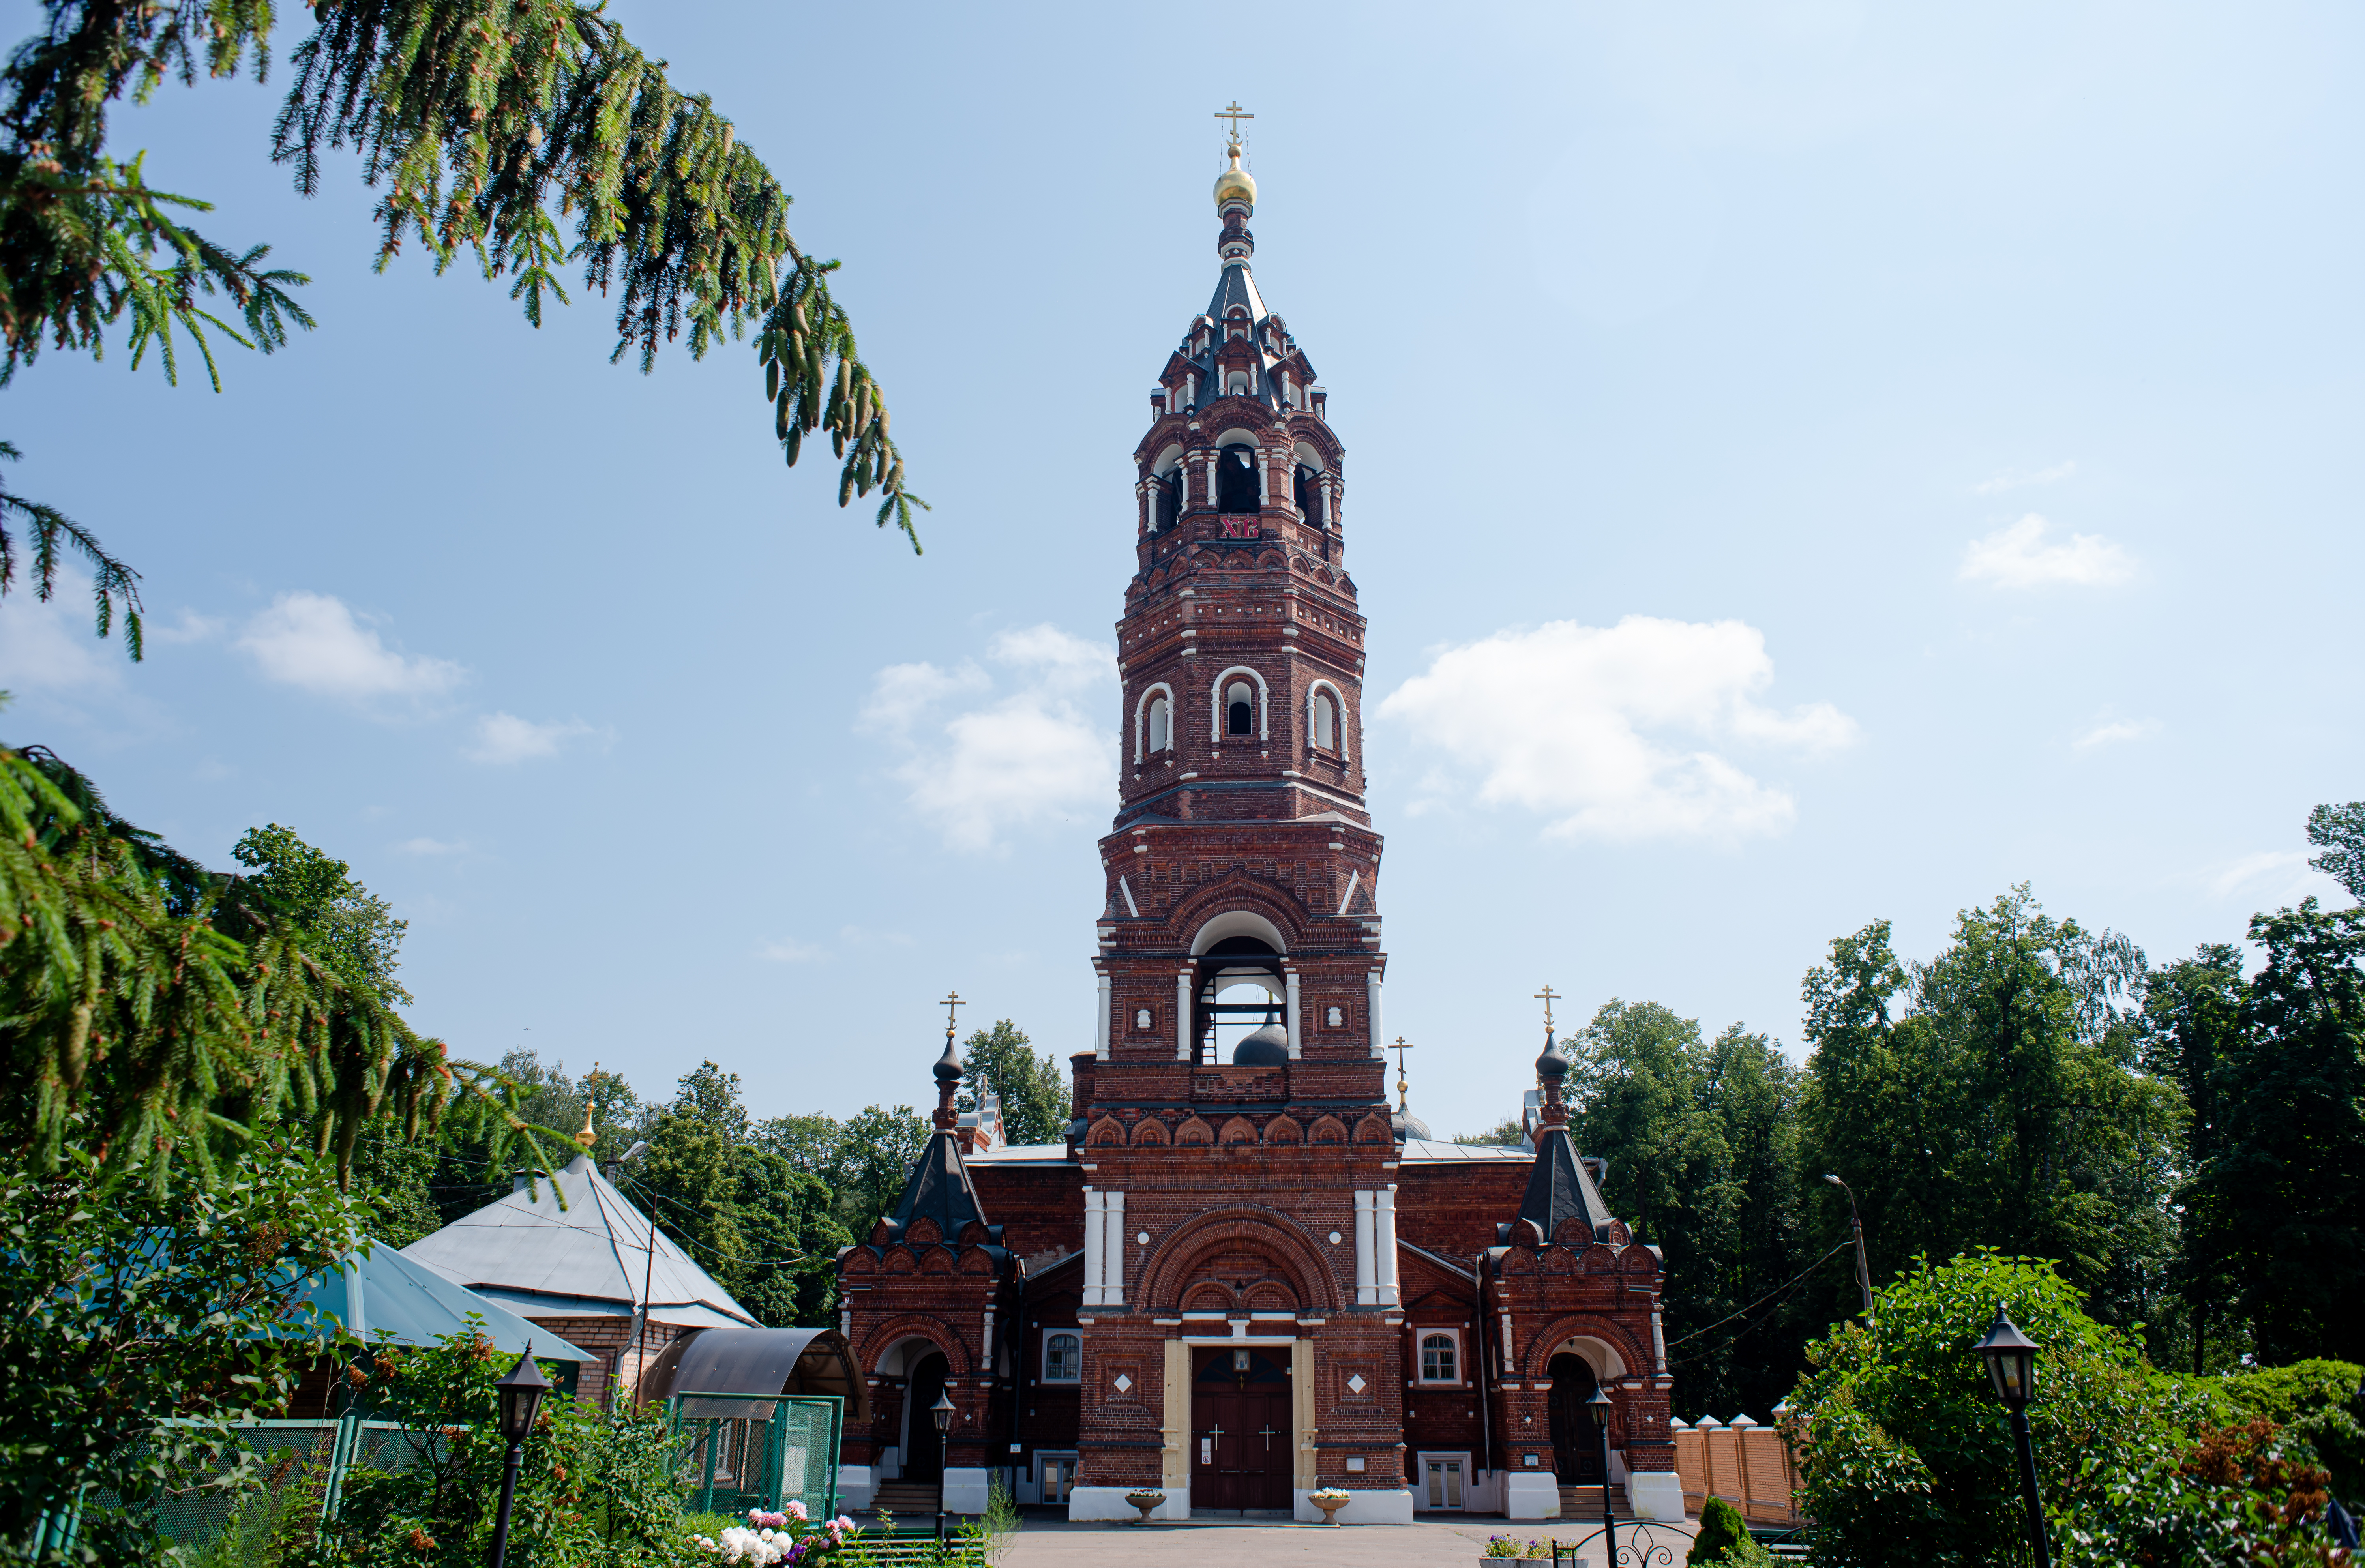 В обители хранятся мощи Василия Грязнова, который в 1999 году был причислен к лику местночтимых святых